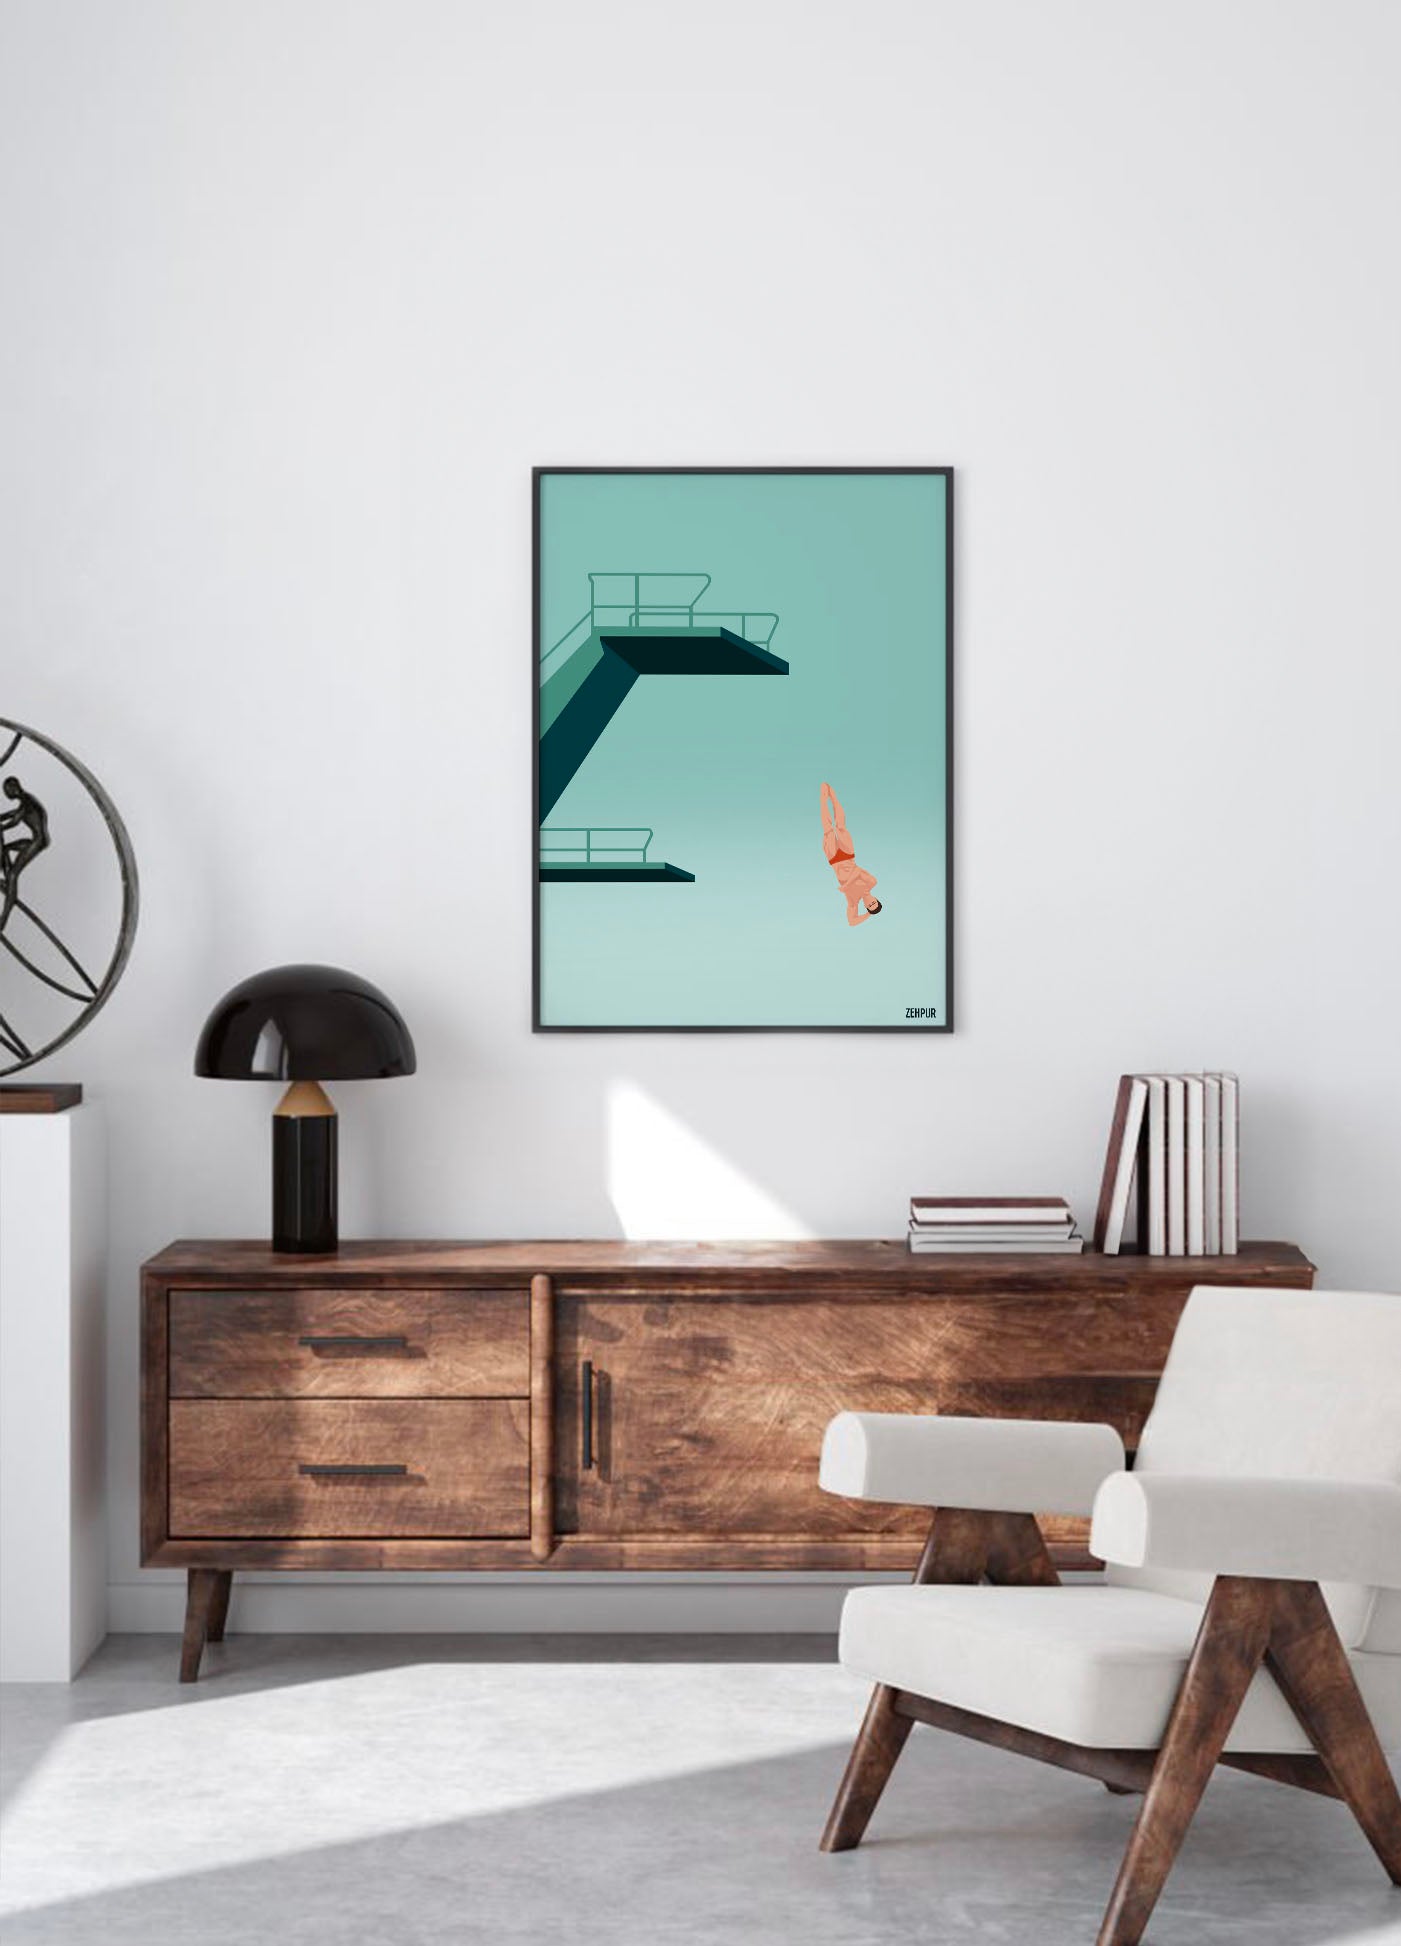 Affiche minimaliste de plongeon artistique avec plongeur en action et plongeoirs stylisés sur fond bleu clair, signée ZEHPUR.